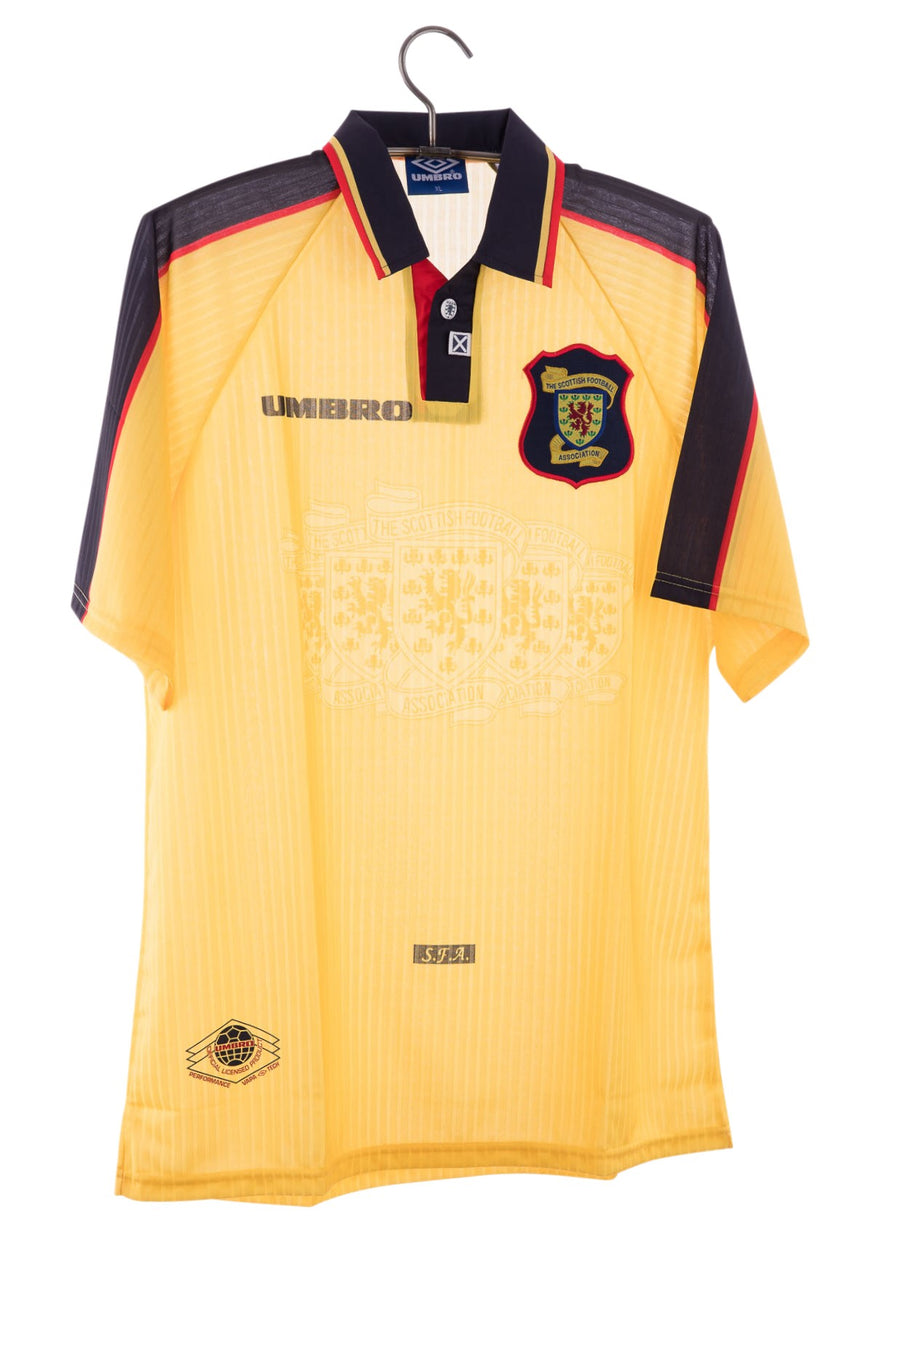 Scotland 1997 - 1998 Away Football Shirt